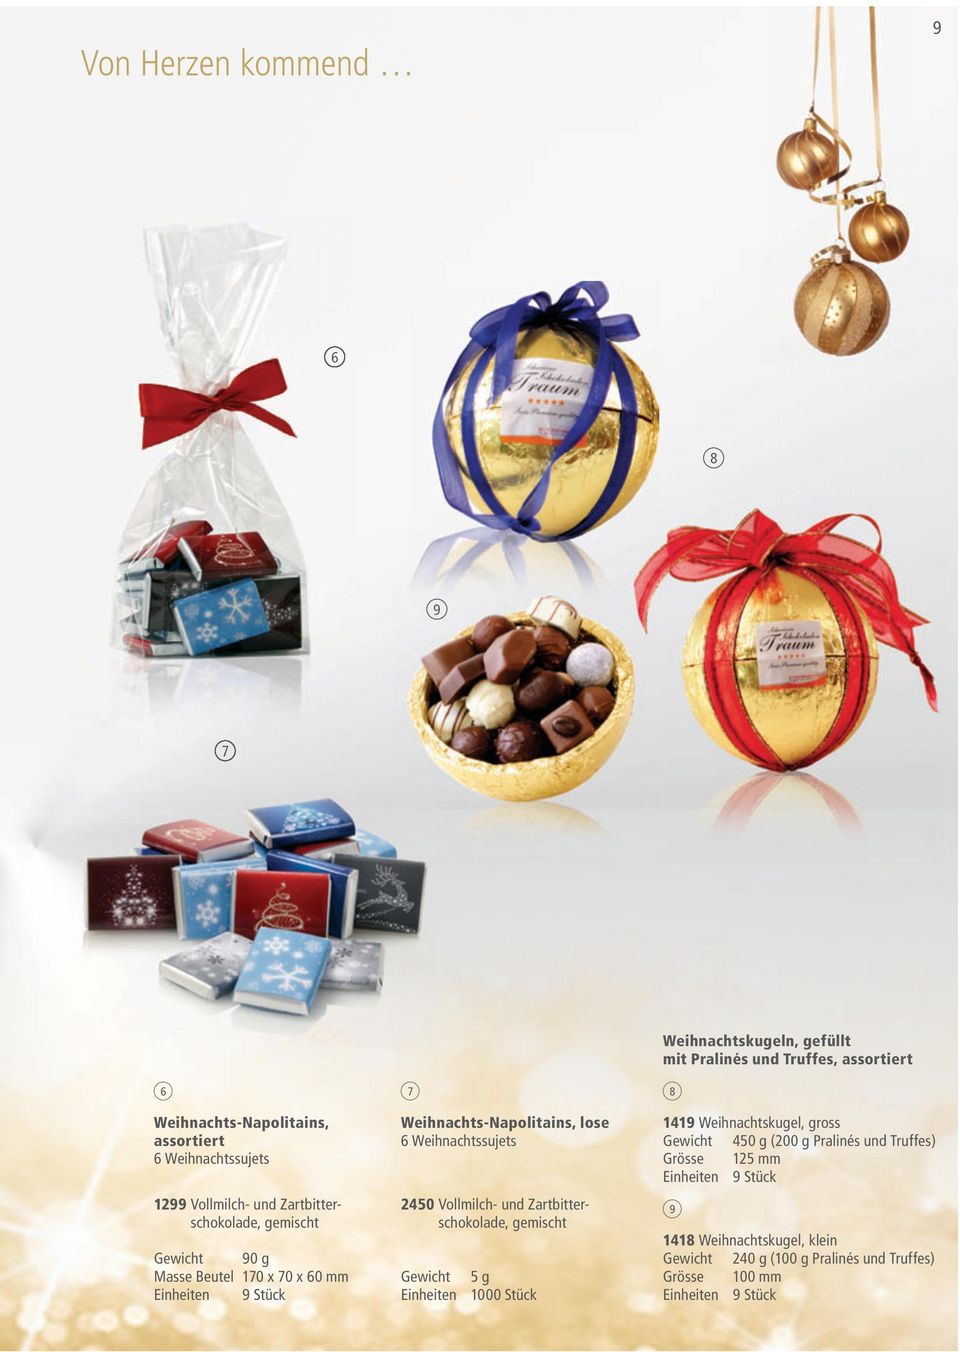 Zartbitterschokolade, gemischt Gewicht g Einheiten 000 Stück Weihnachtskugeln, gefüllt mit Pralinés und Truffes,